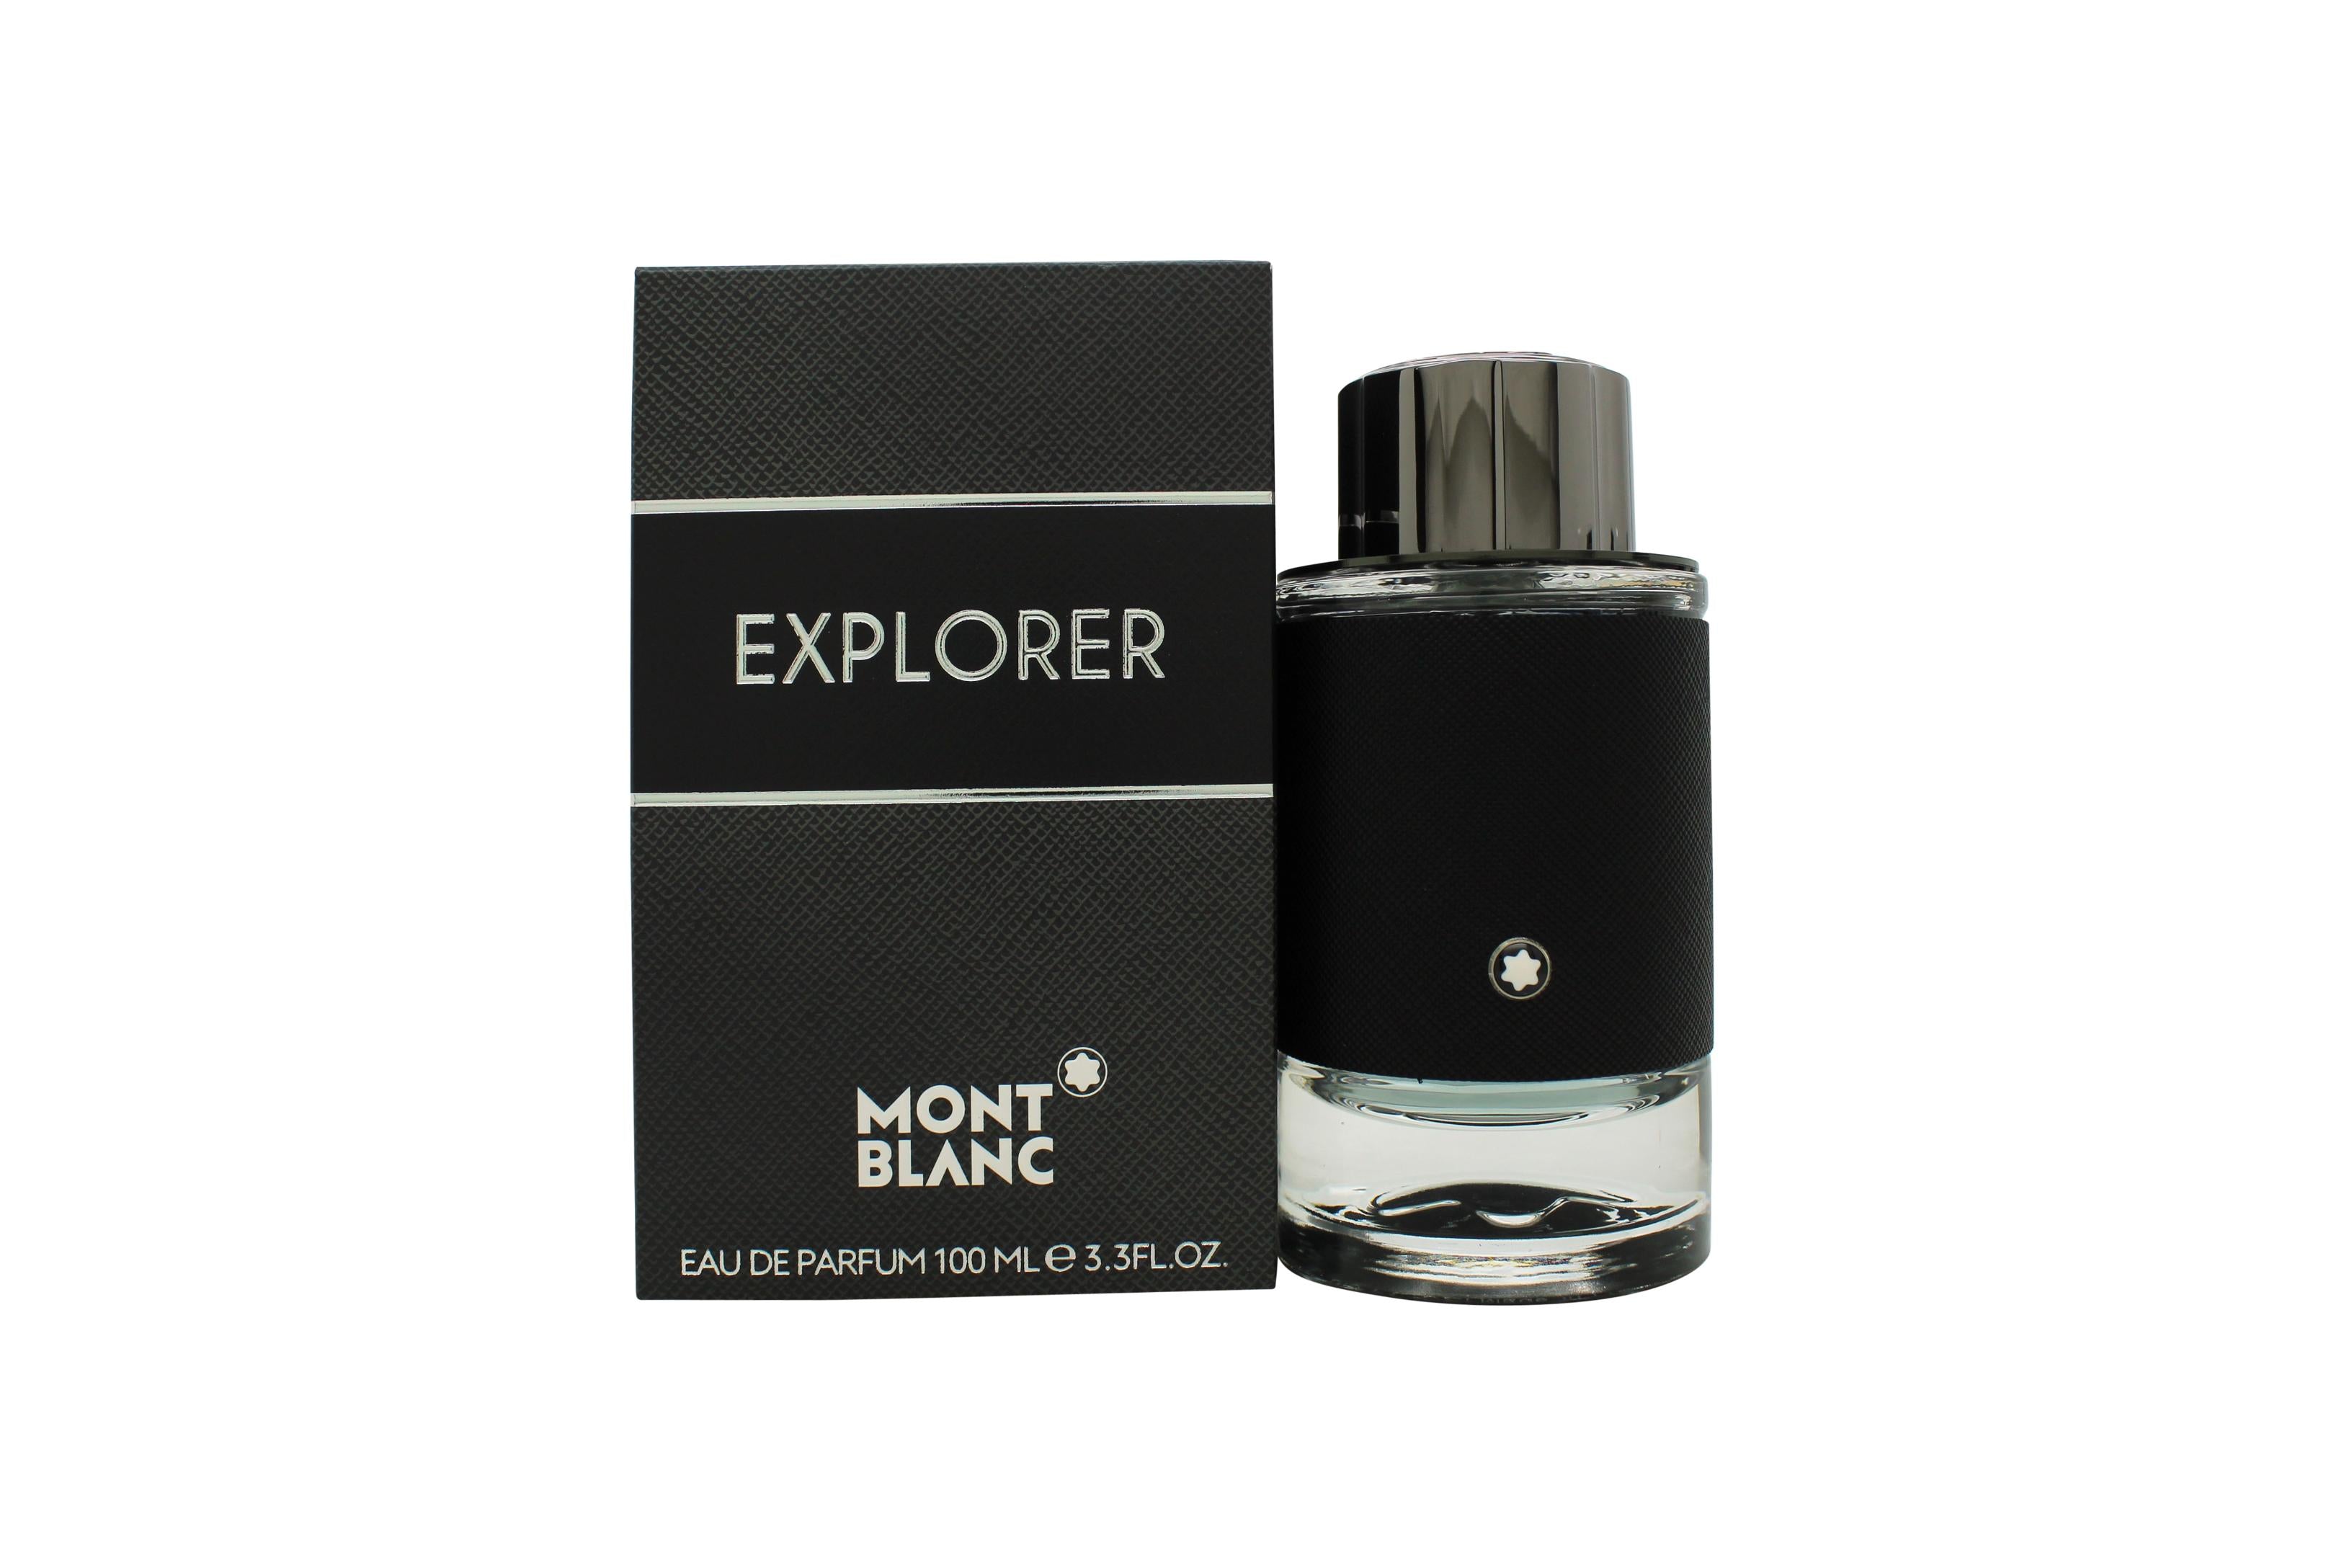 View Mont Blanc Explorer Eau de Parfum 100ml Spray information